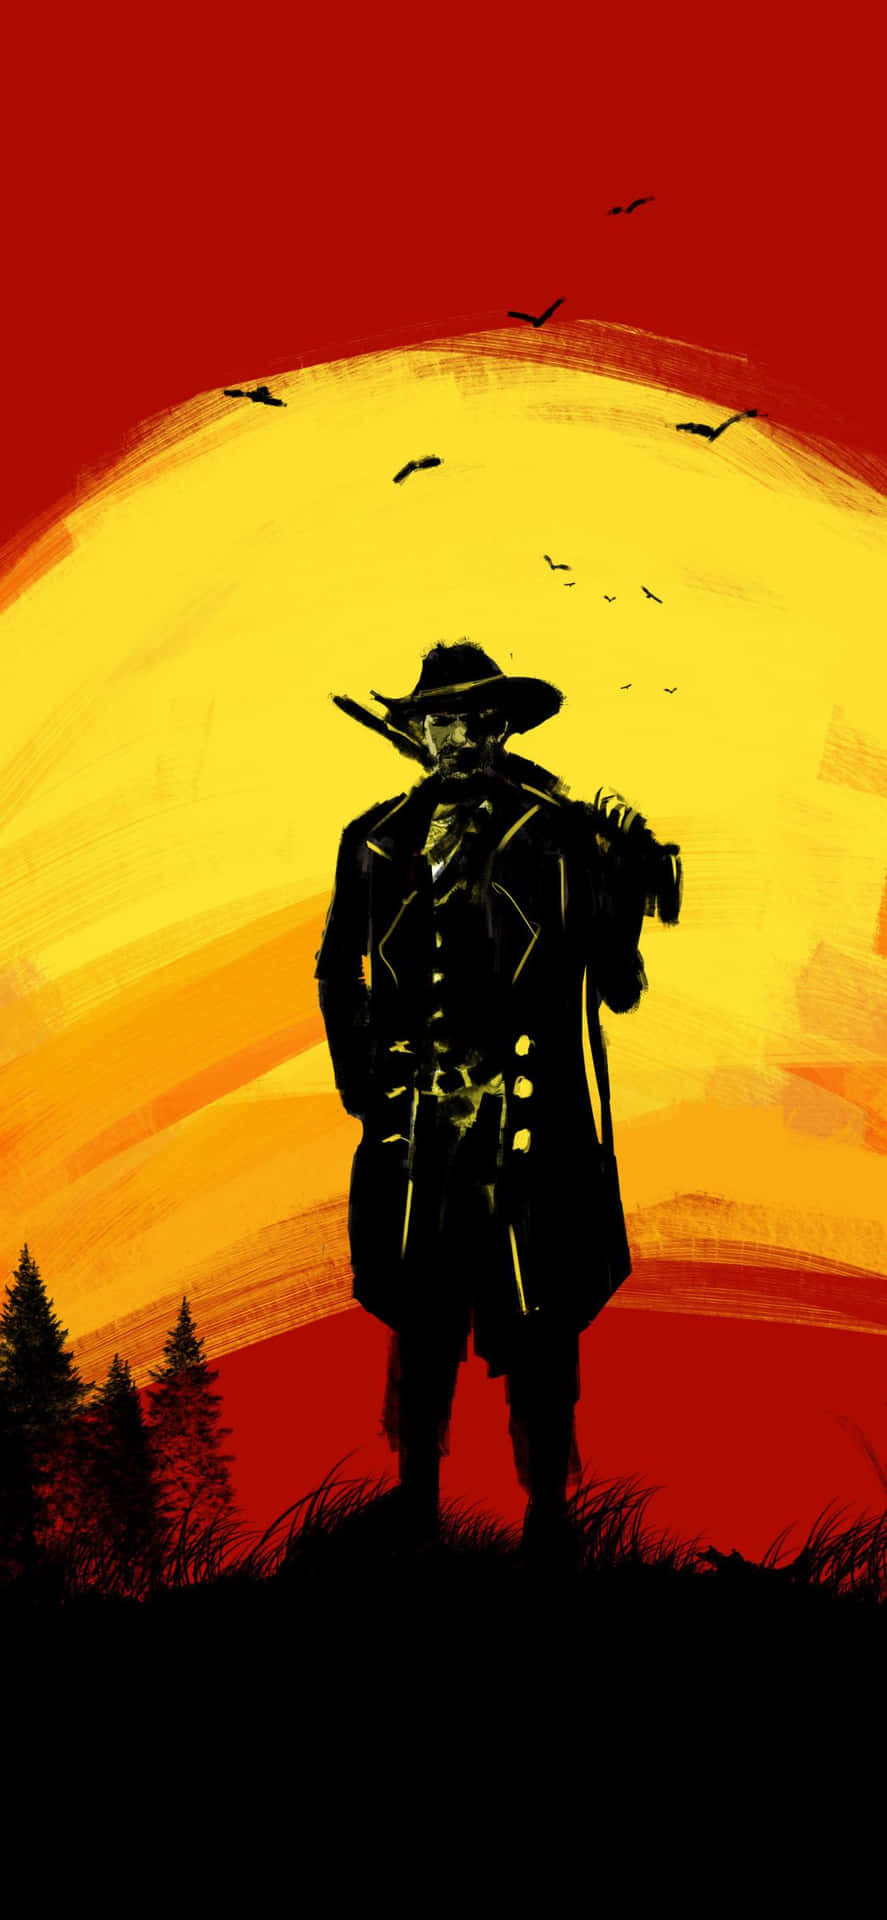 Migliorquadro Di Red Dead Redemption 2 Di Un Cowboy Con Uno Sfondo Di Fucile